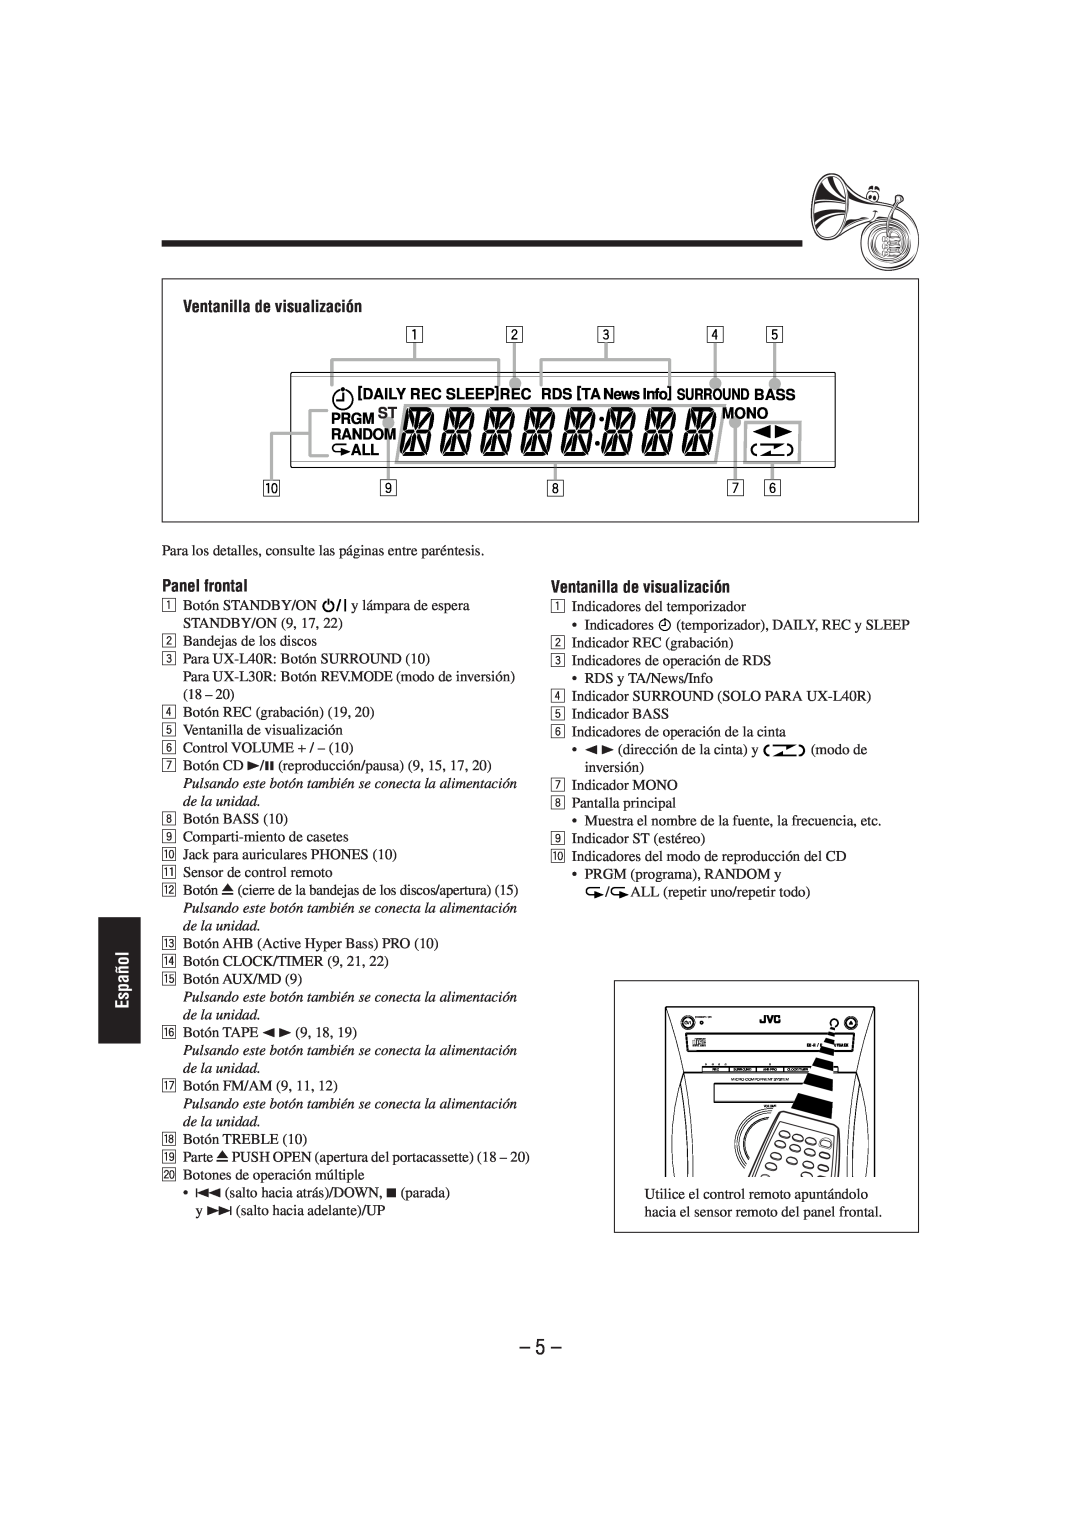 JVC SP-UXL30, UX-L40R, UX-L30R, SP-UXL40, CA-UXL40R, CA-UXL30R manual Panel frontal, Ventanilla de visualización, 5, Español 